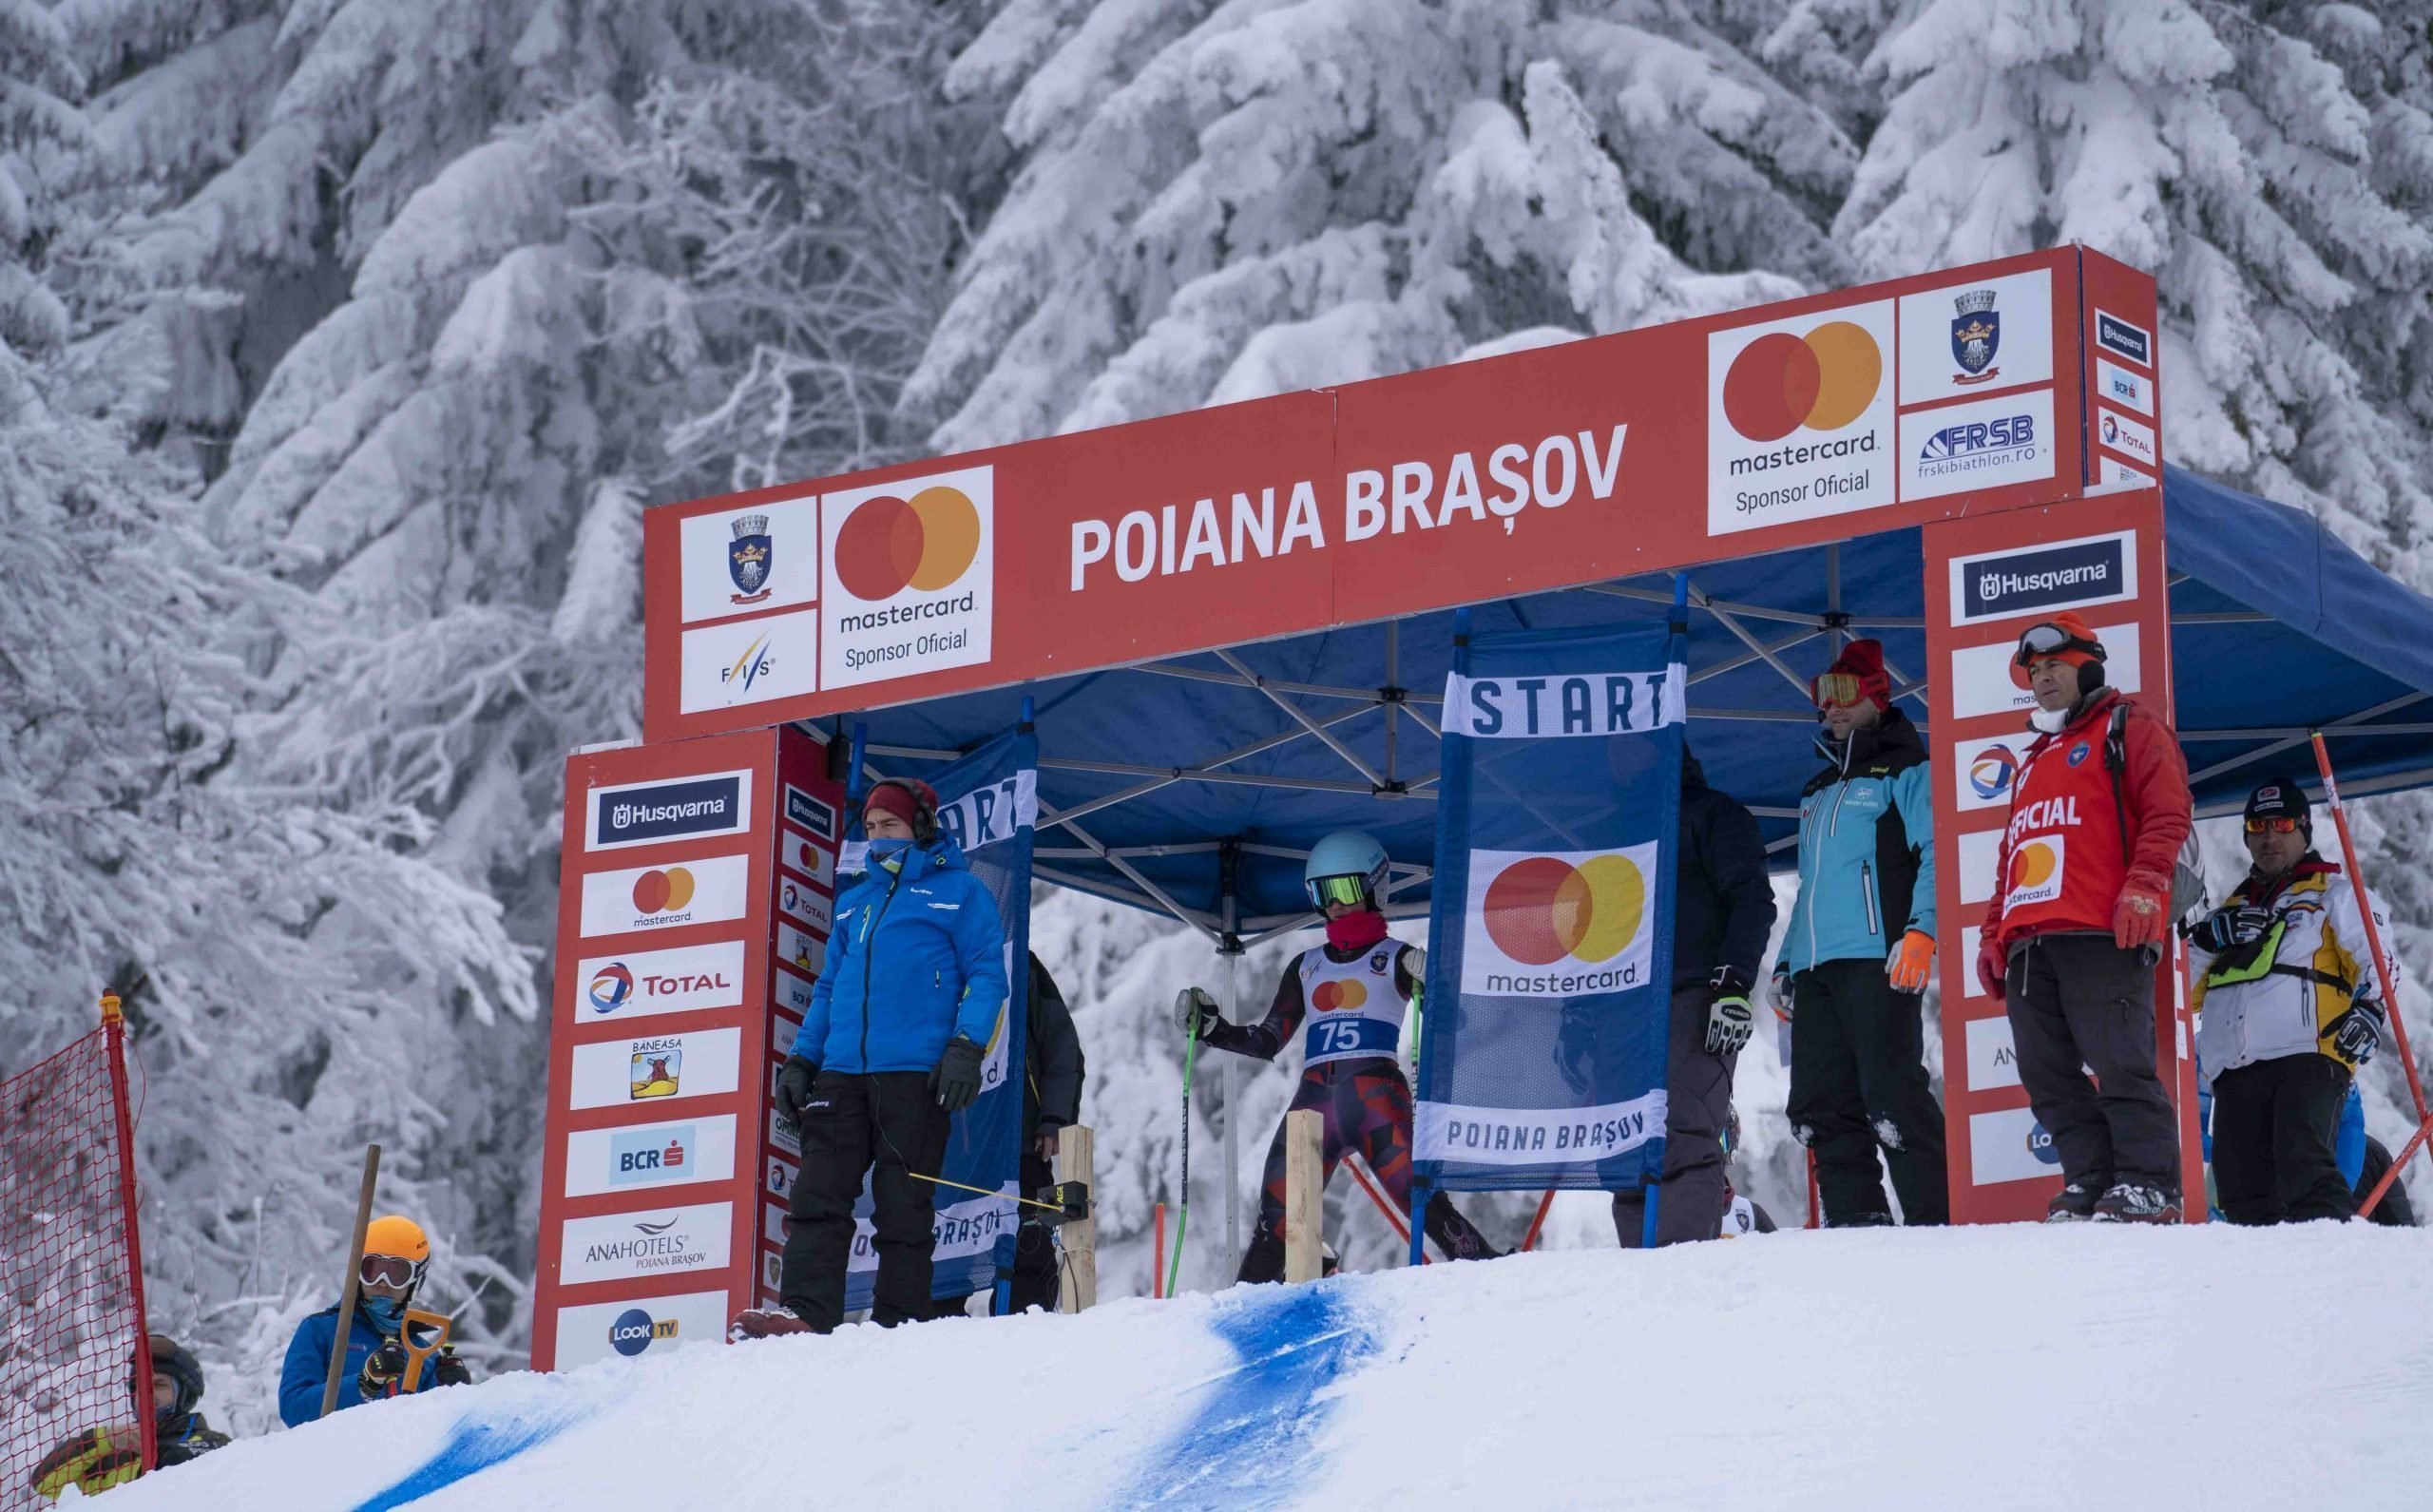 Românii sunt campioni la schi. Opt medalii câștigate la Poiana Brașov